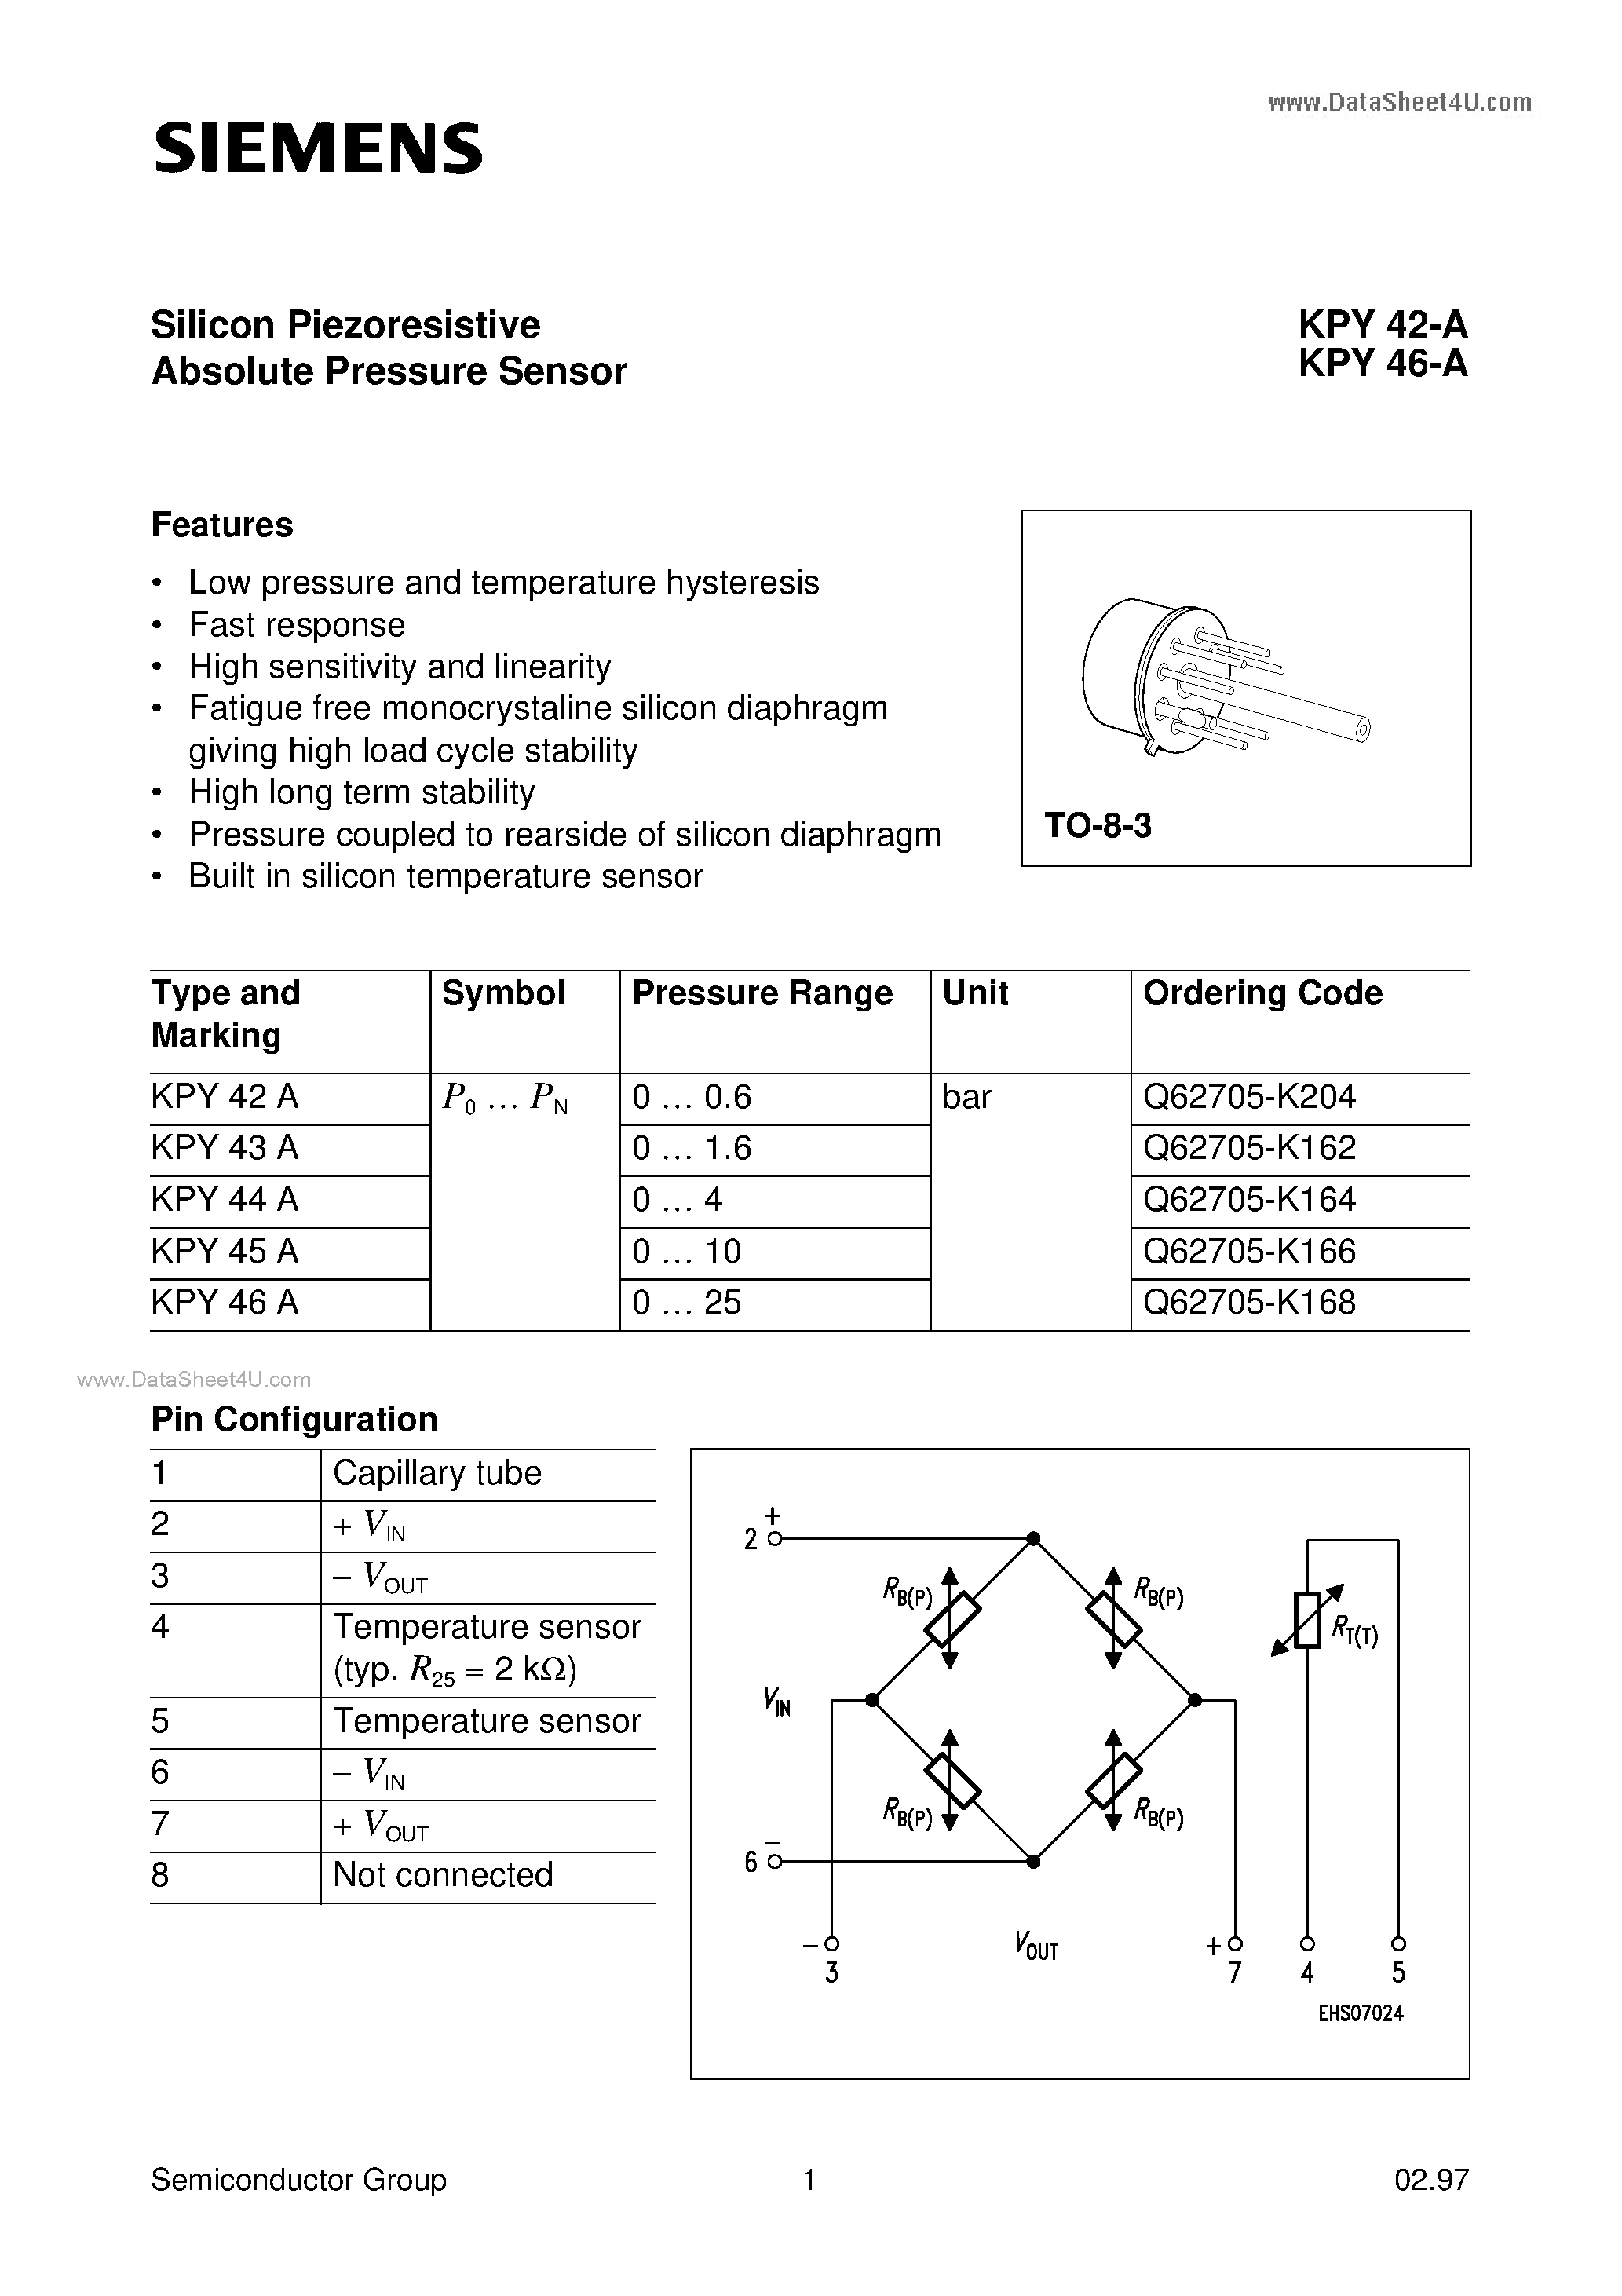 Даташит KPY42-A-(KPY42-A / KPY46-A) Silicon Piezoresistive Absolute Pressure Sensor страница 1